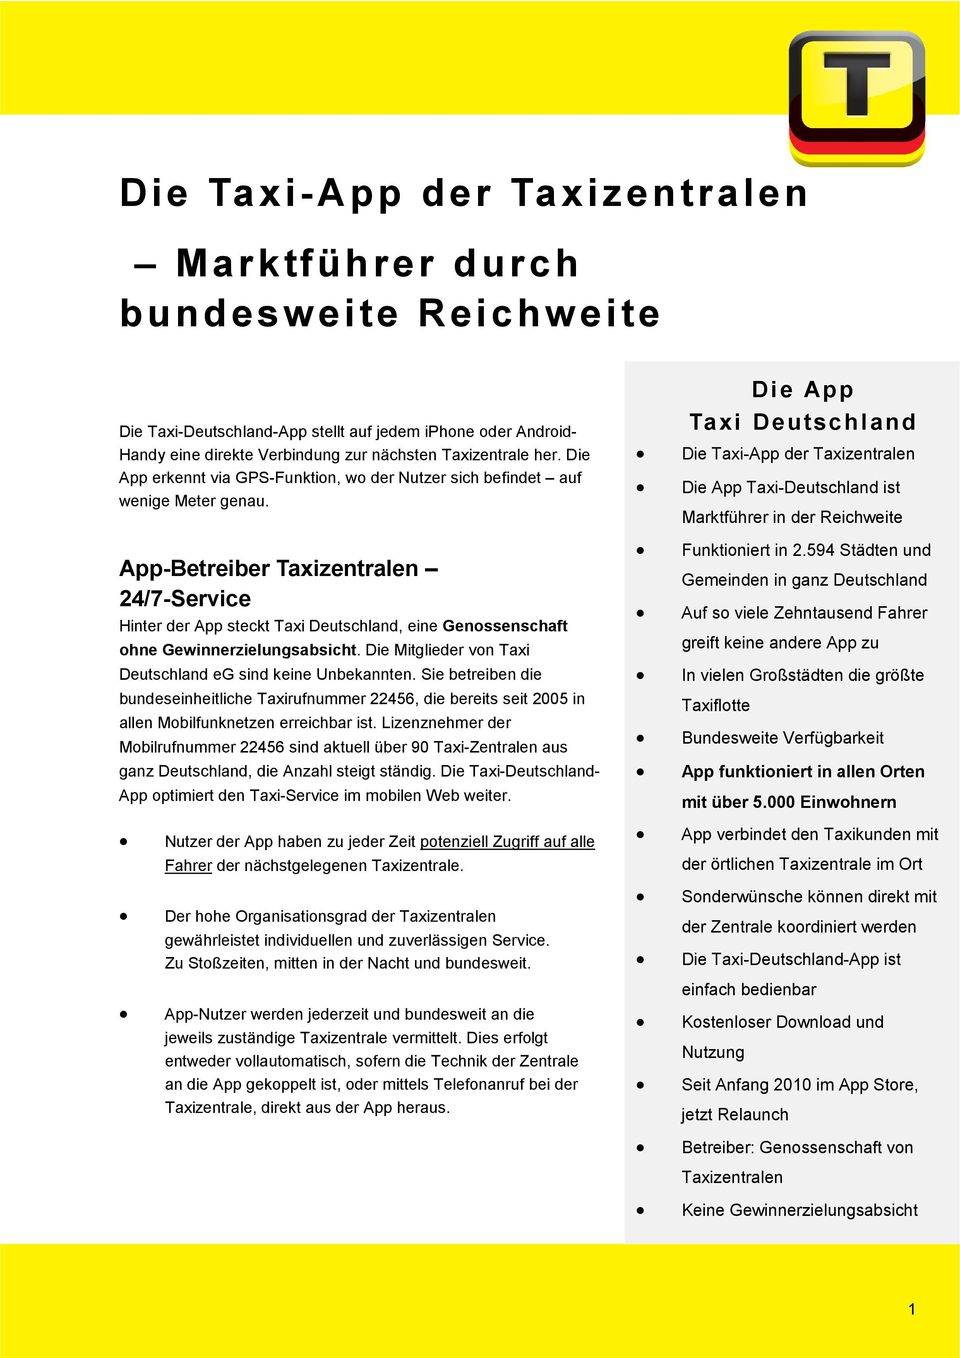 App-Betreiber Taxizentralen 24/7-Service Hinter der App steckt Taxi Deutschland, eine Genossenschaft ohne Gewinnerzielungsabsicht. Die Mitglieder von Taxi Deutschland eg sind keine Unbekannten.